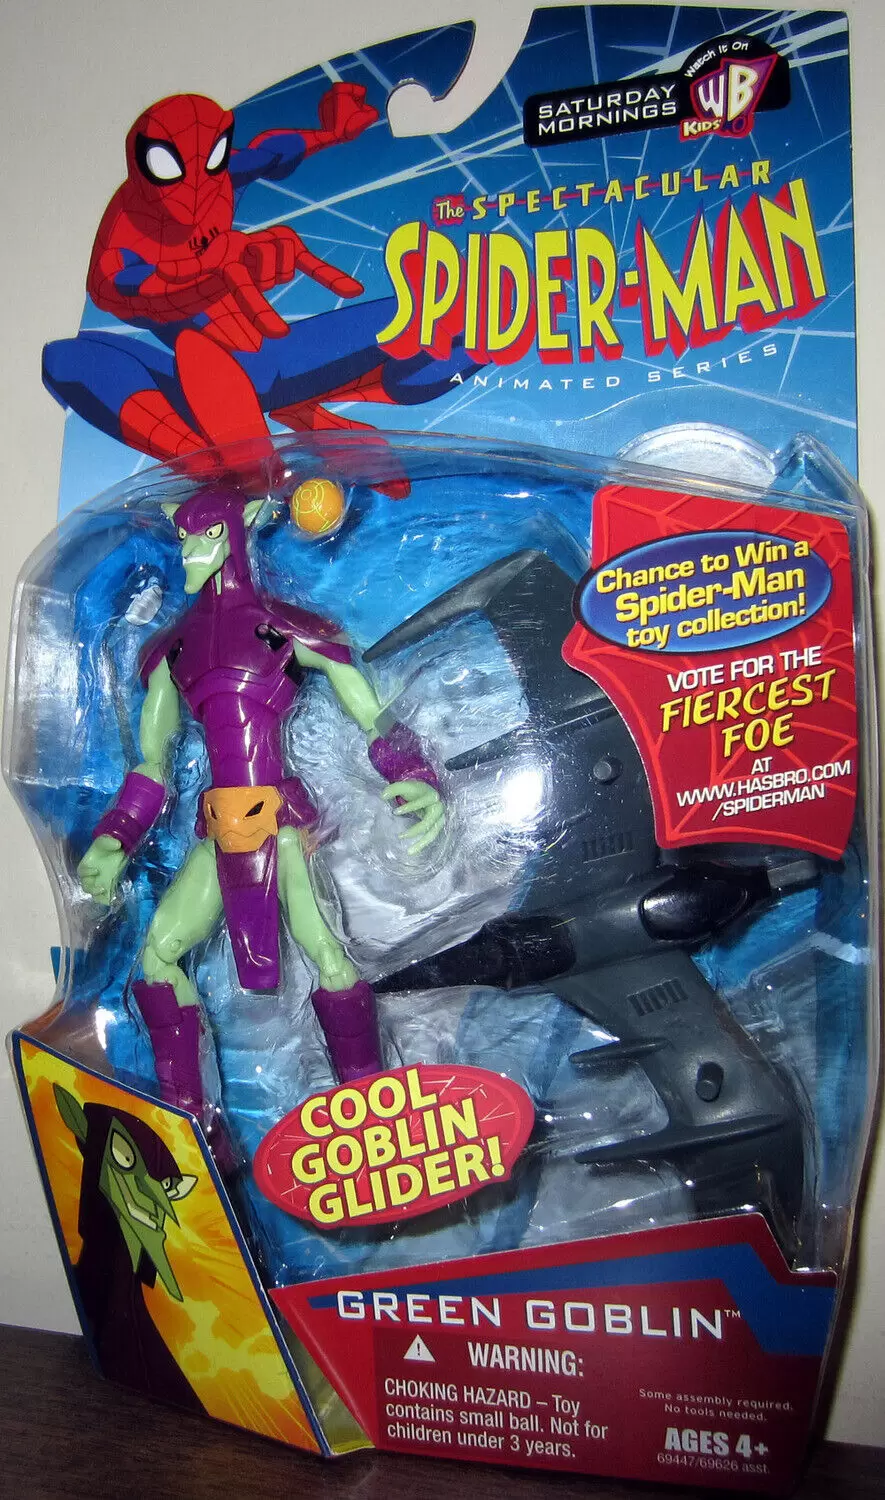 spectacular spider man sandman toy